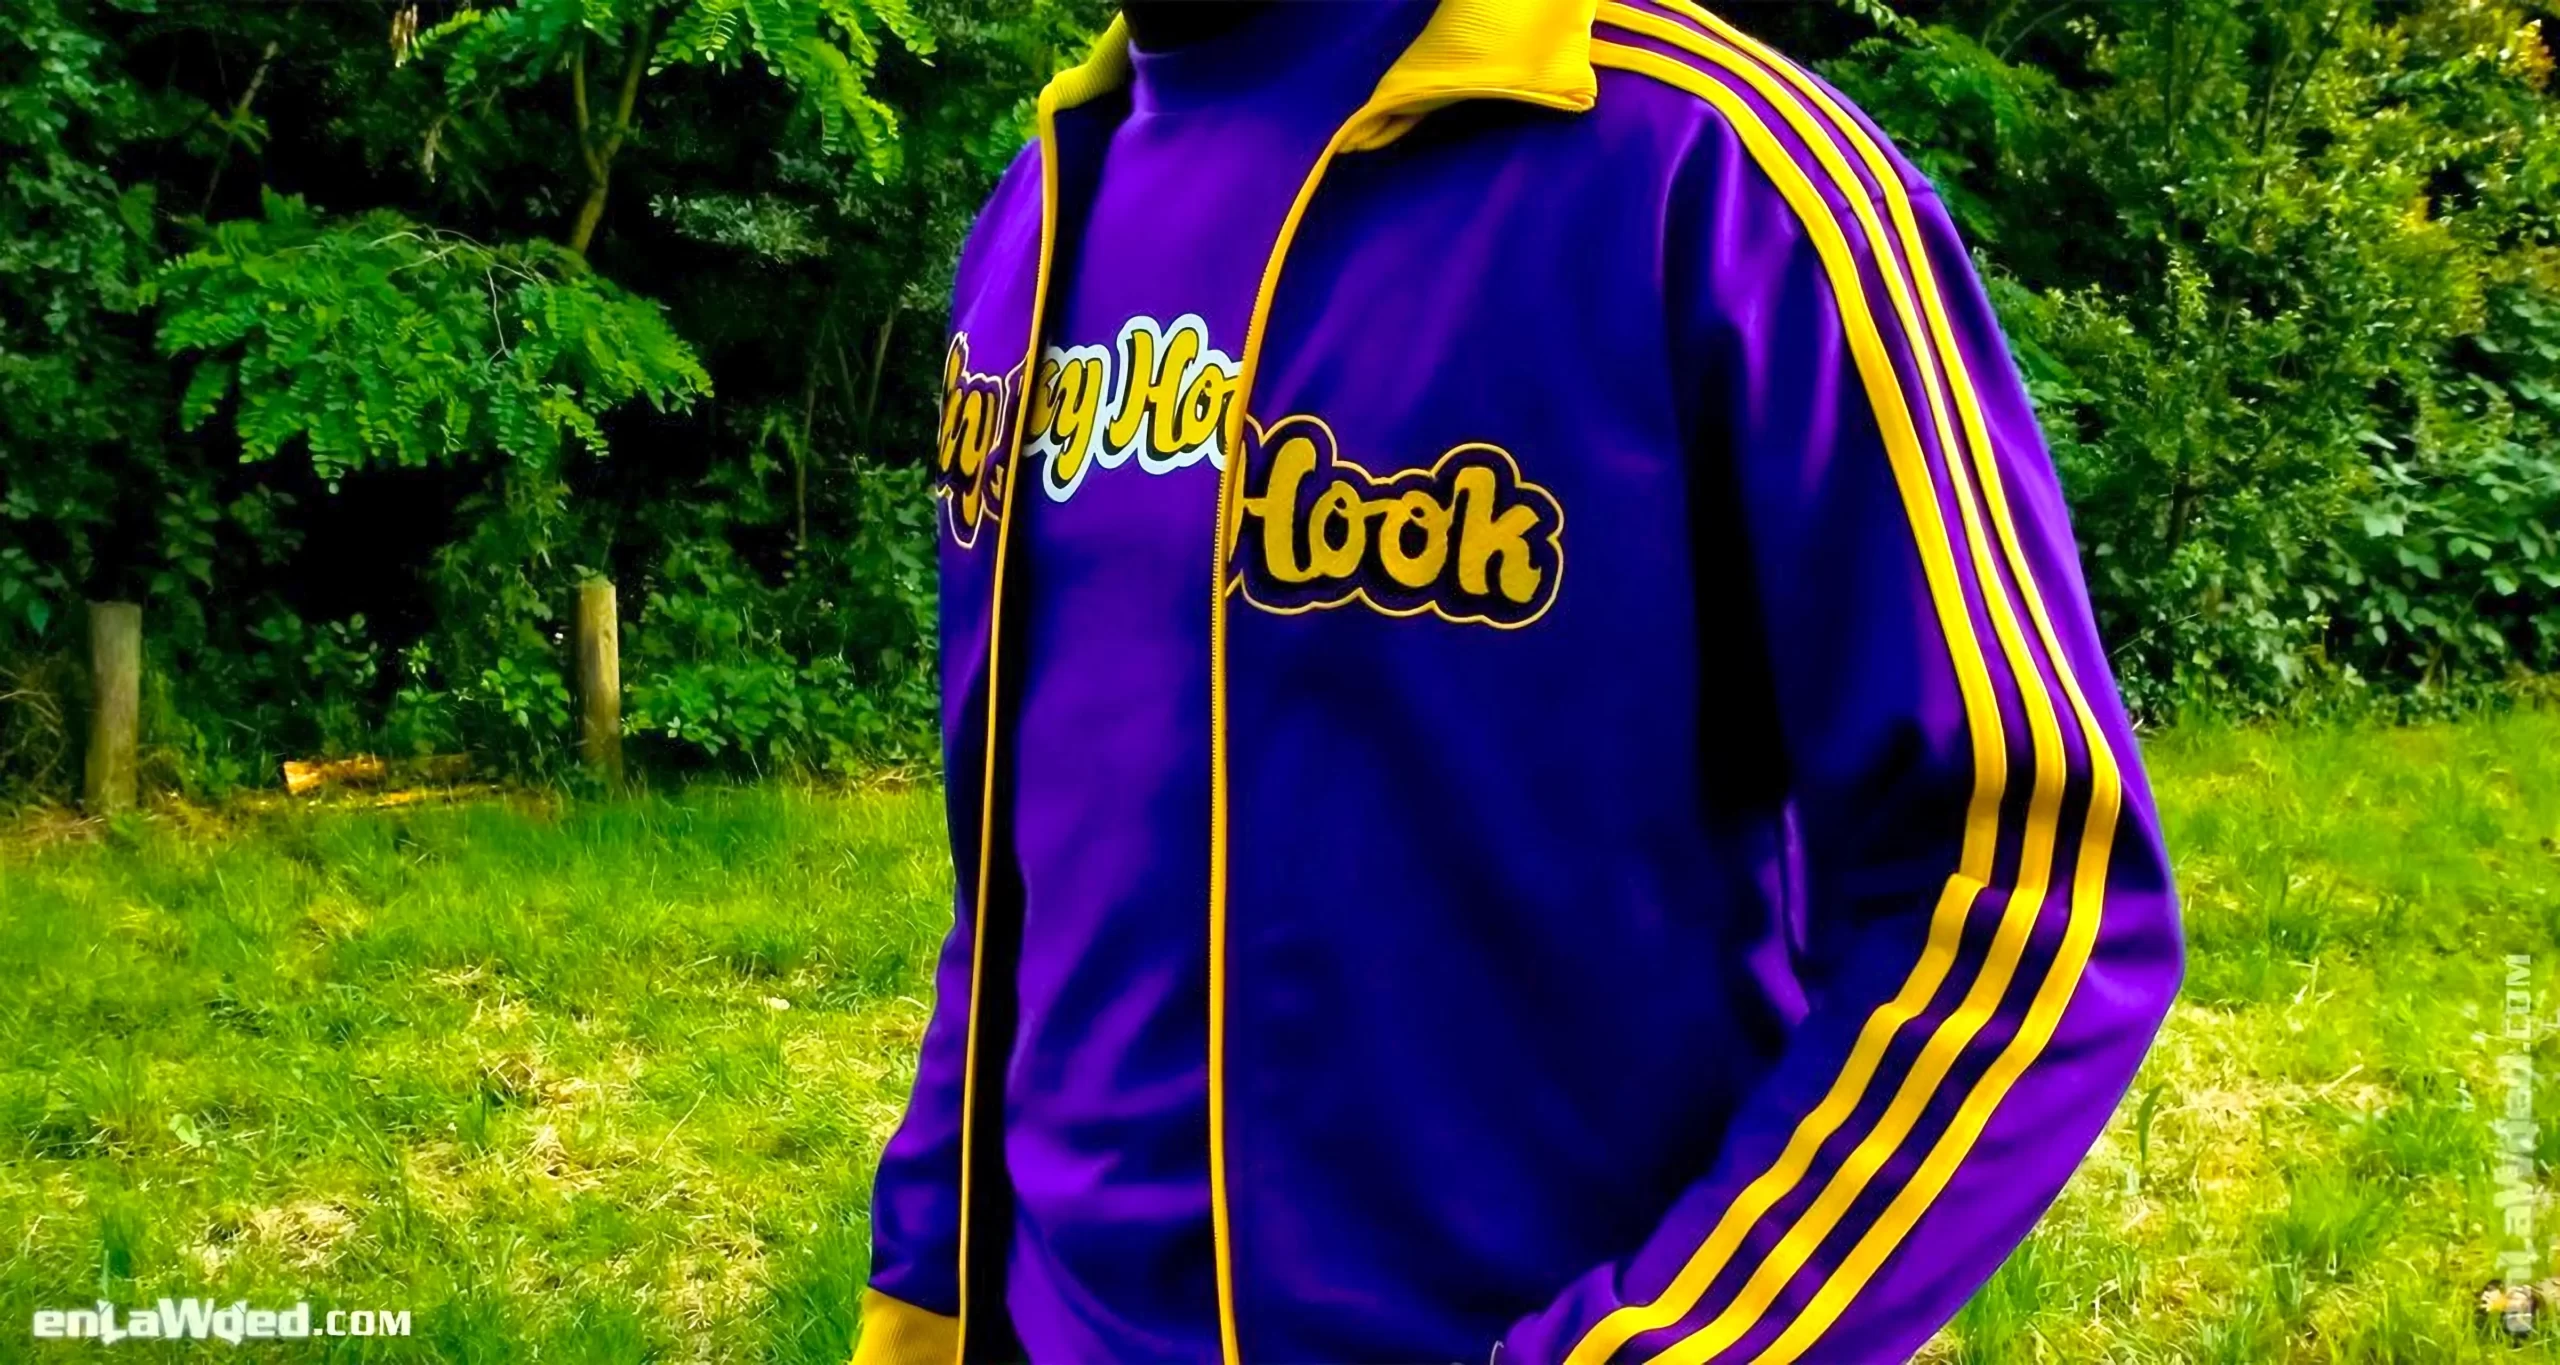 Men’s 2004 SkyHook Lakers #33 Track Top by Adidas: Rookie (EnLawded.com file #lmchk90371ip2y124415kg9st)